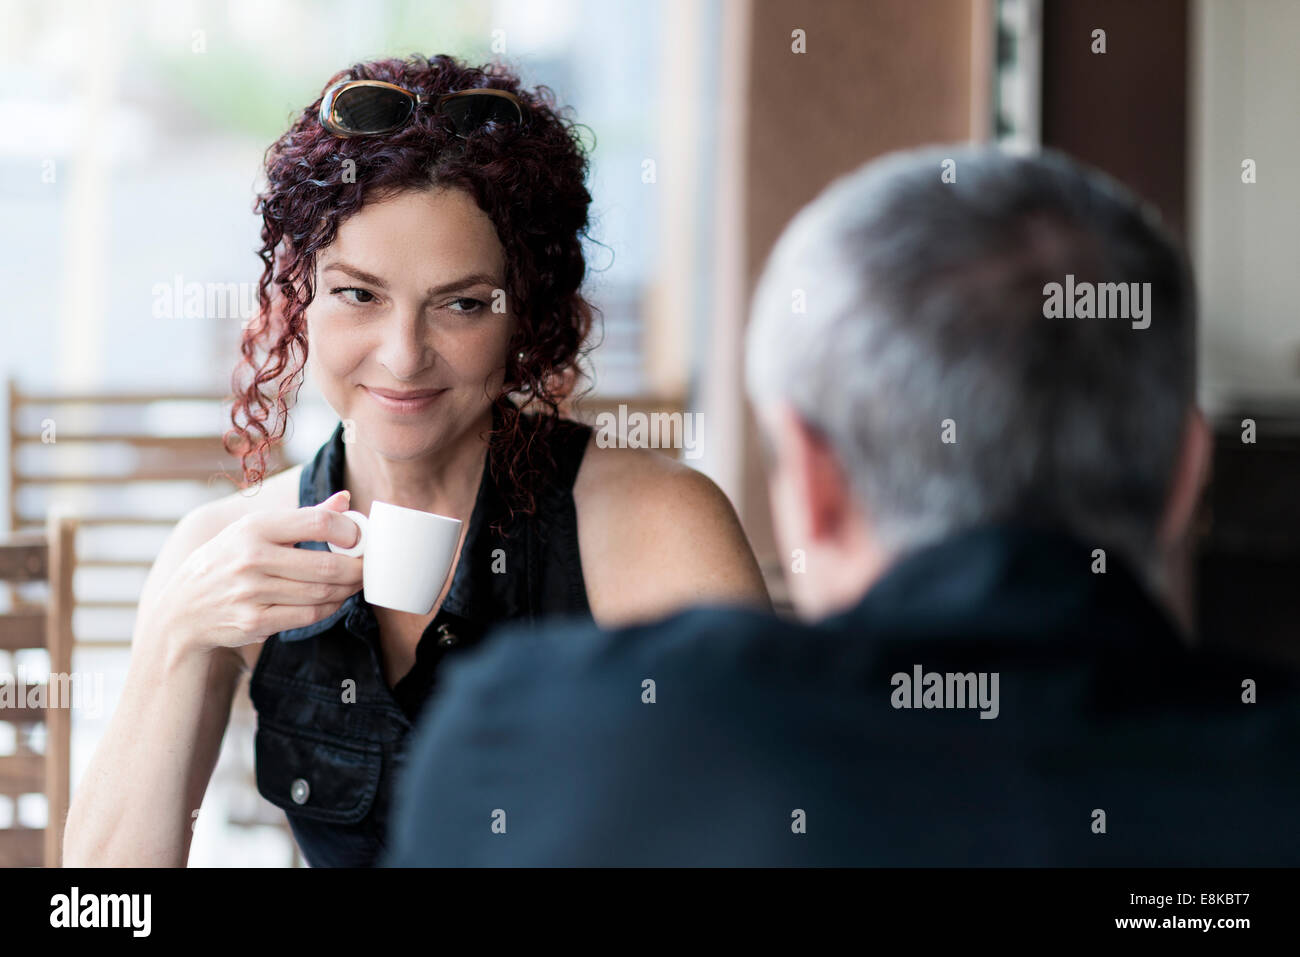 Mildlife dating-ouple più vecchi in un coffee shop Foto Stock